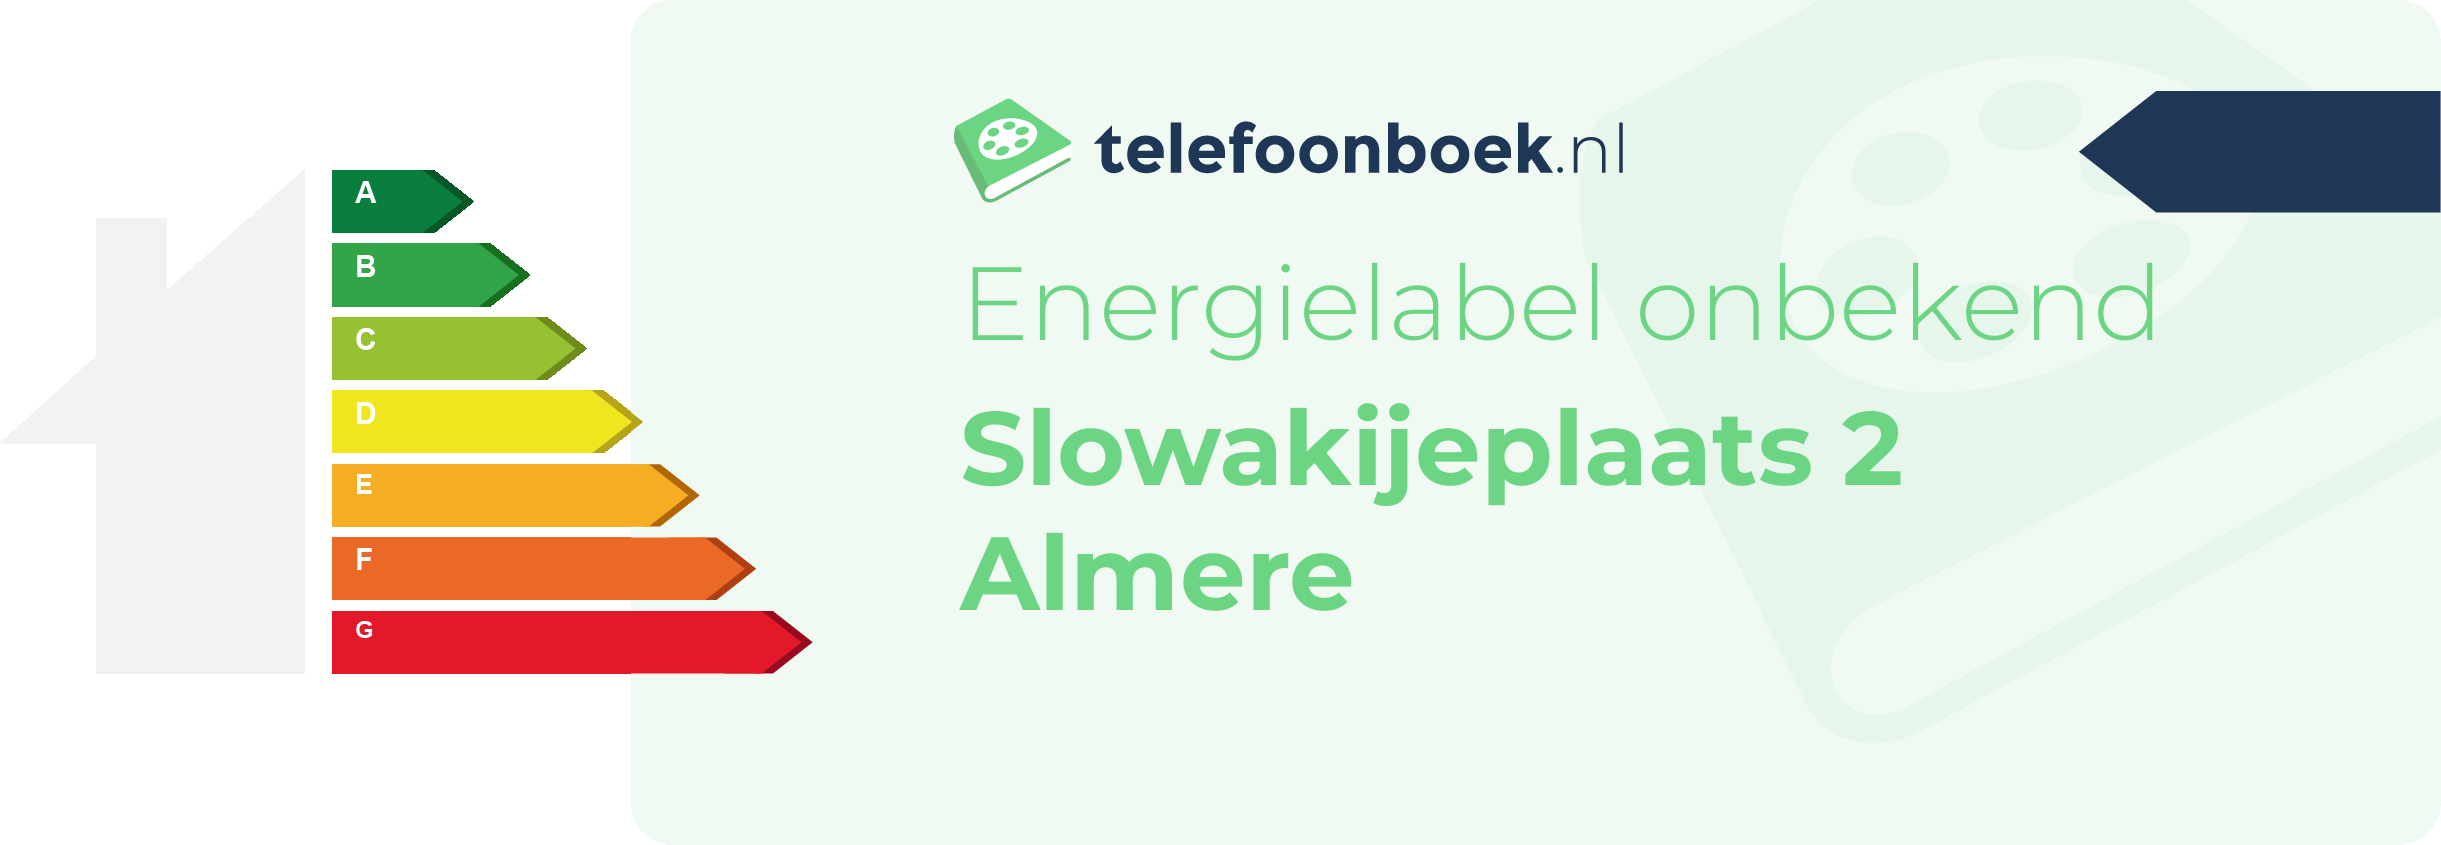 Energielabel Slowakijeplaats 2 Almere